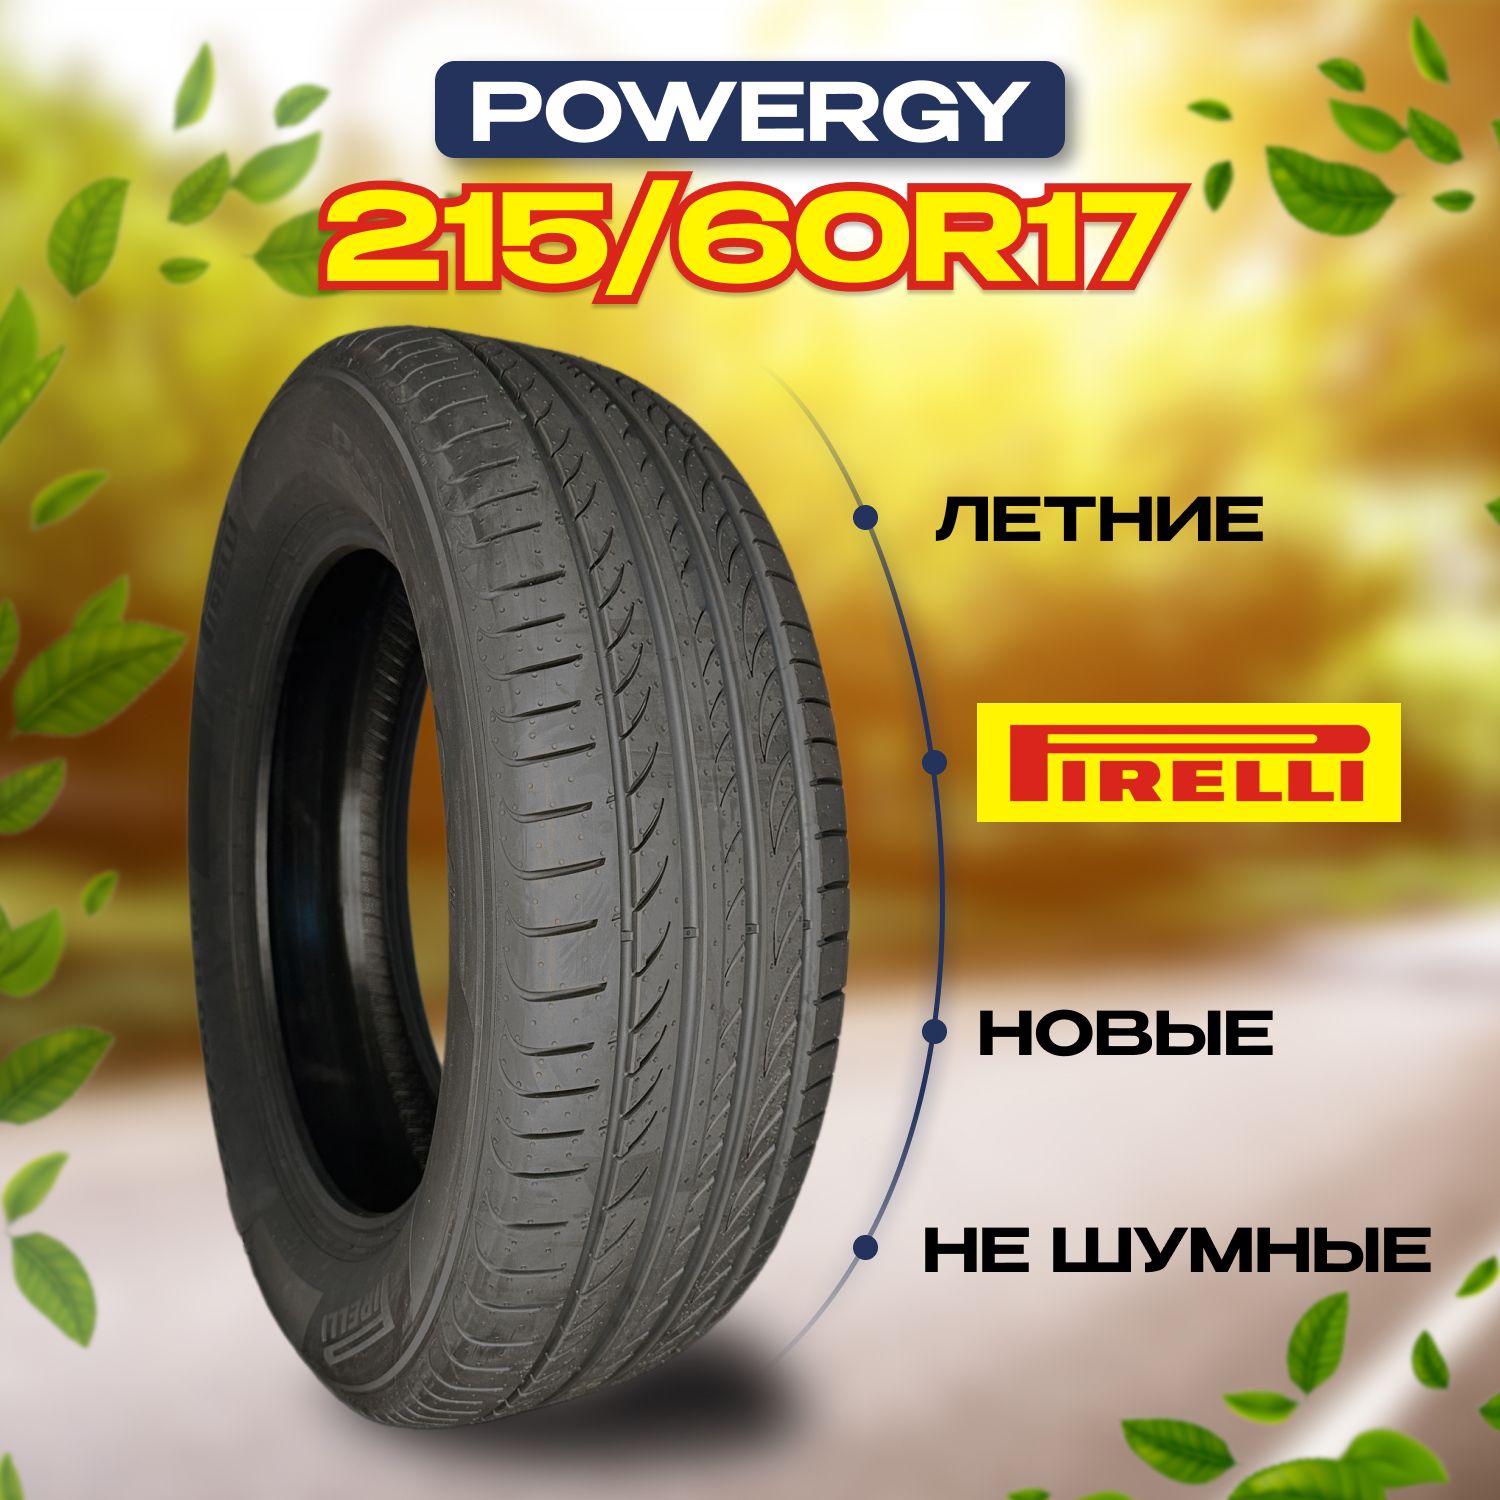 Pirelli 215 60 r17 96v